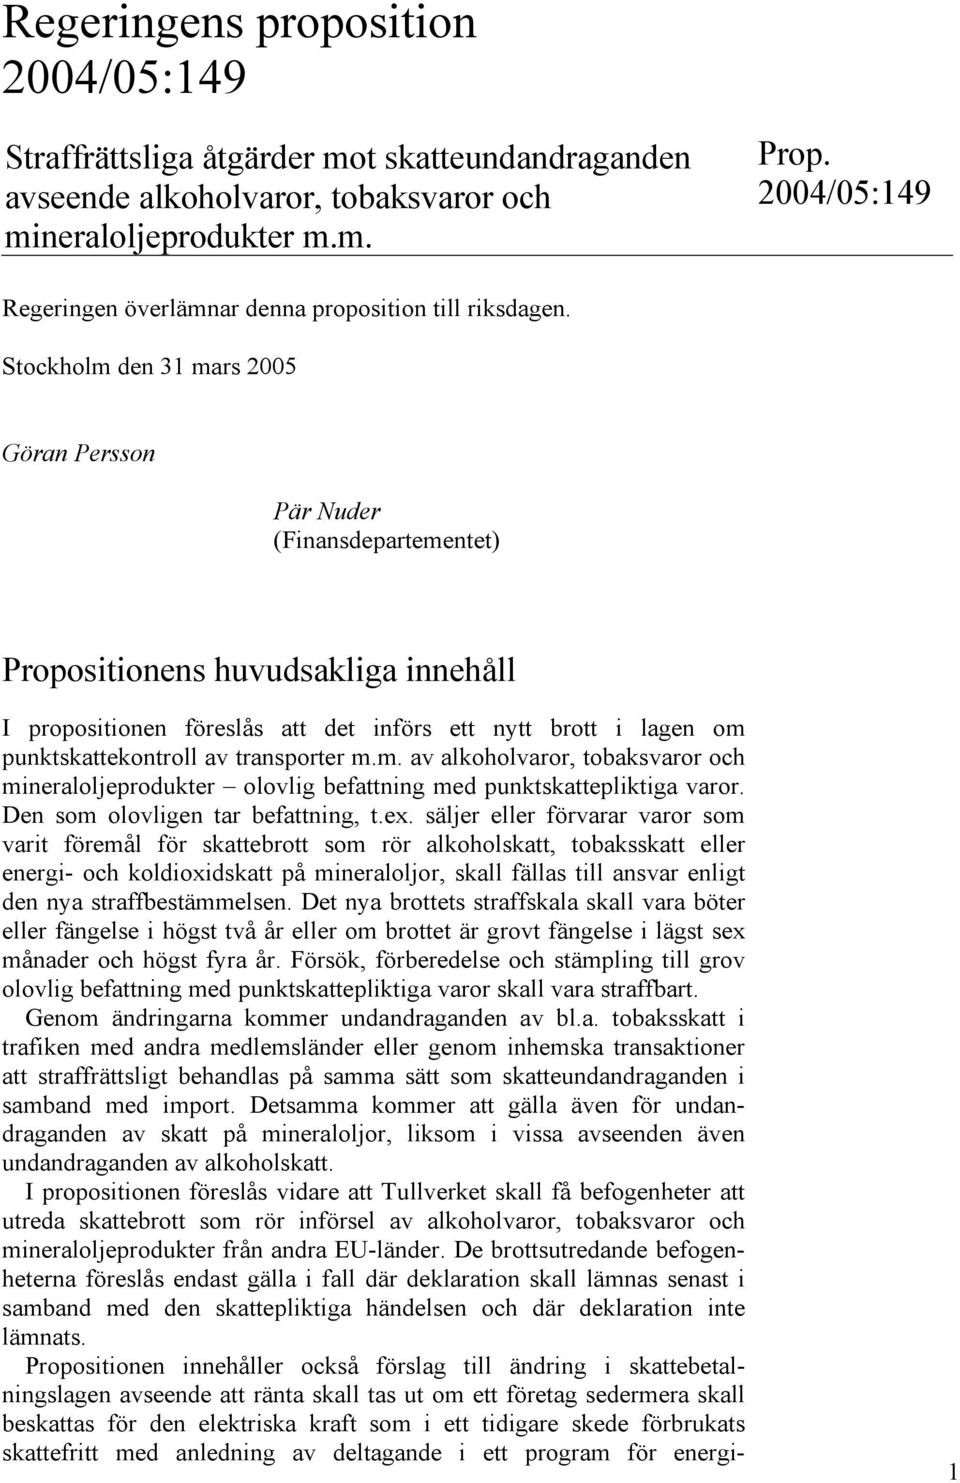 Stockholm den 31 mars 2005 Göran Persson Pär Nuder (Finansdepartementet) Propositionens huvudsakliga innehåll I propositionen föreslås att det införs ett nytt brott i lagen om punktskattekontroll av